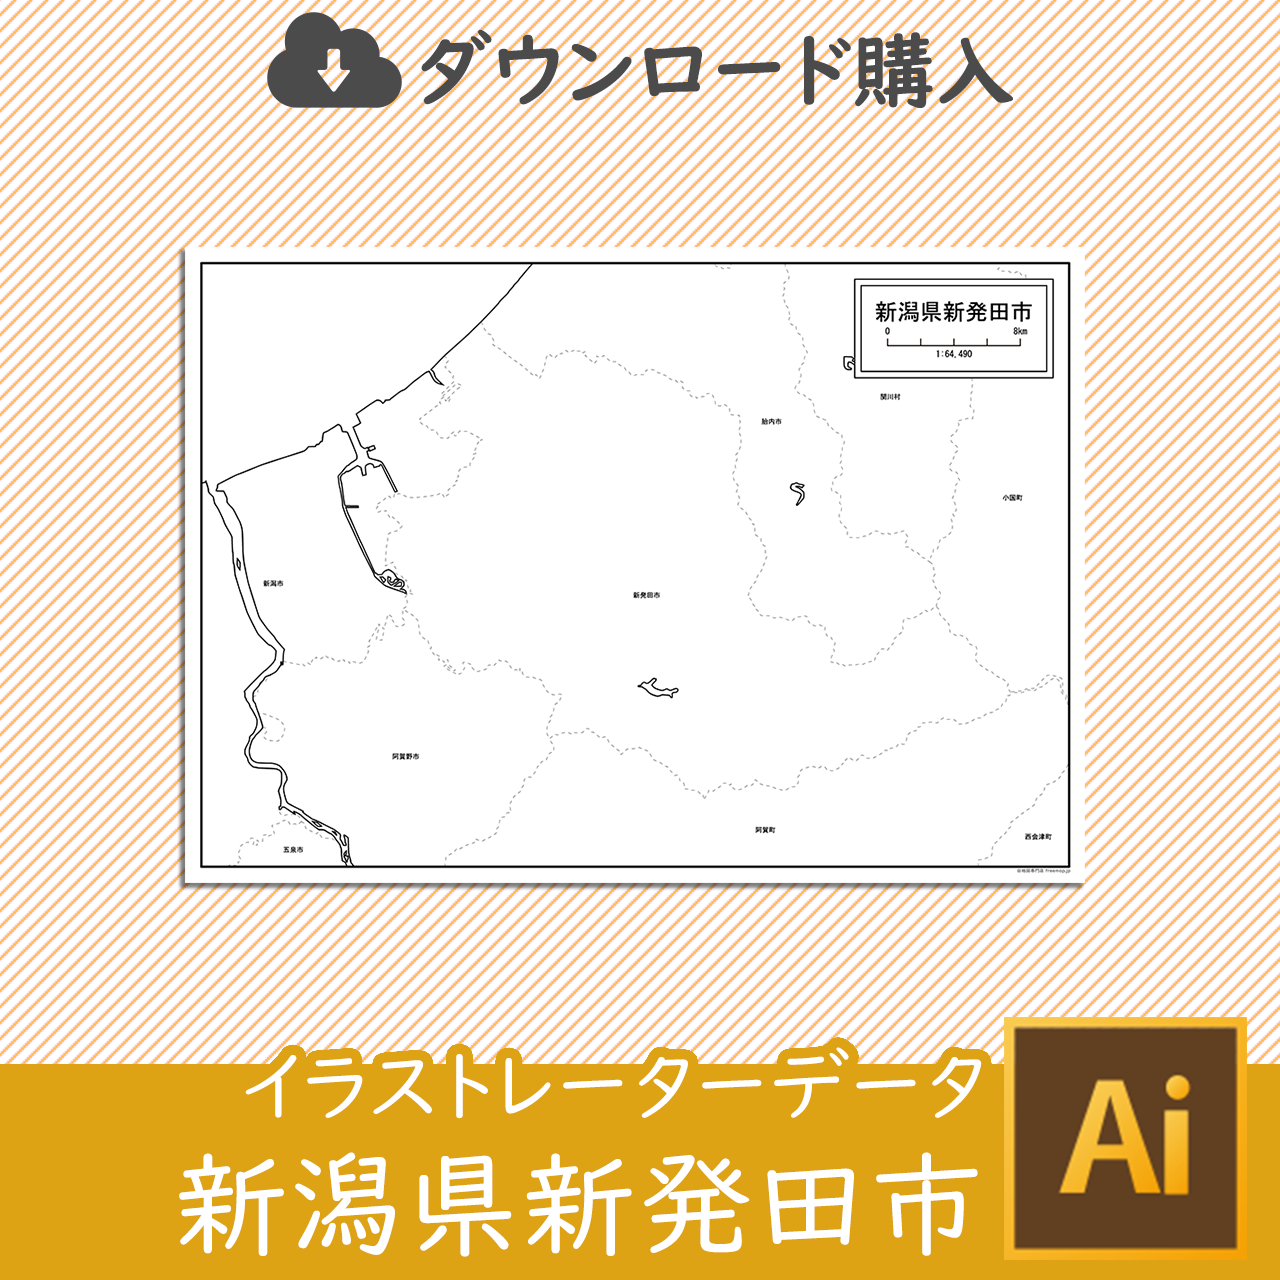 新発田市のaiデータのサムネイル画像